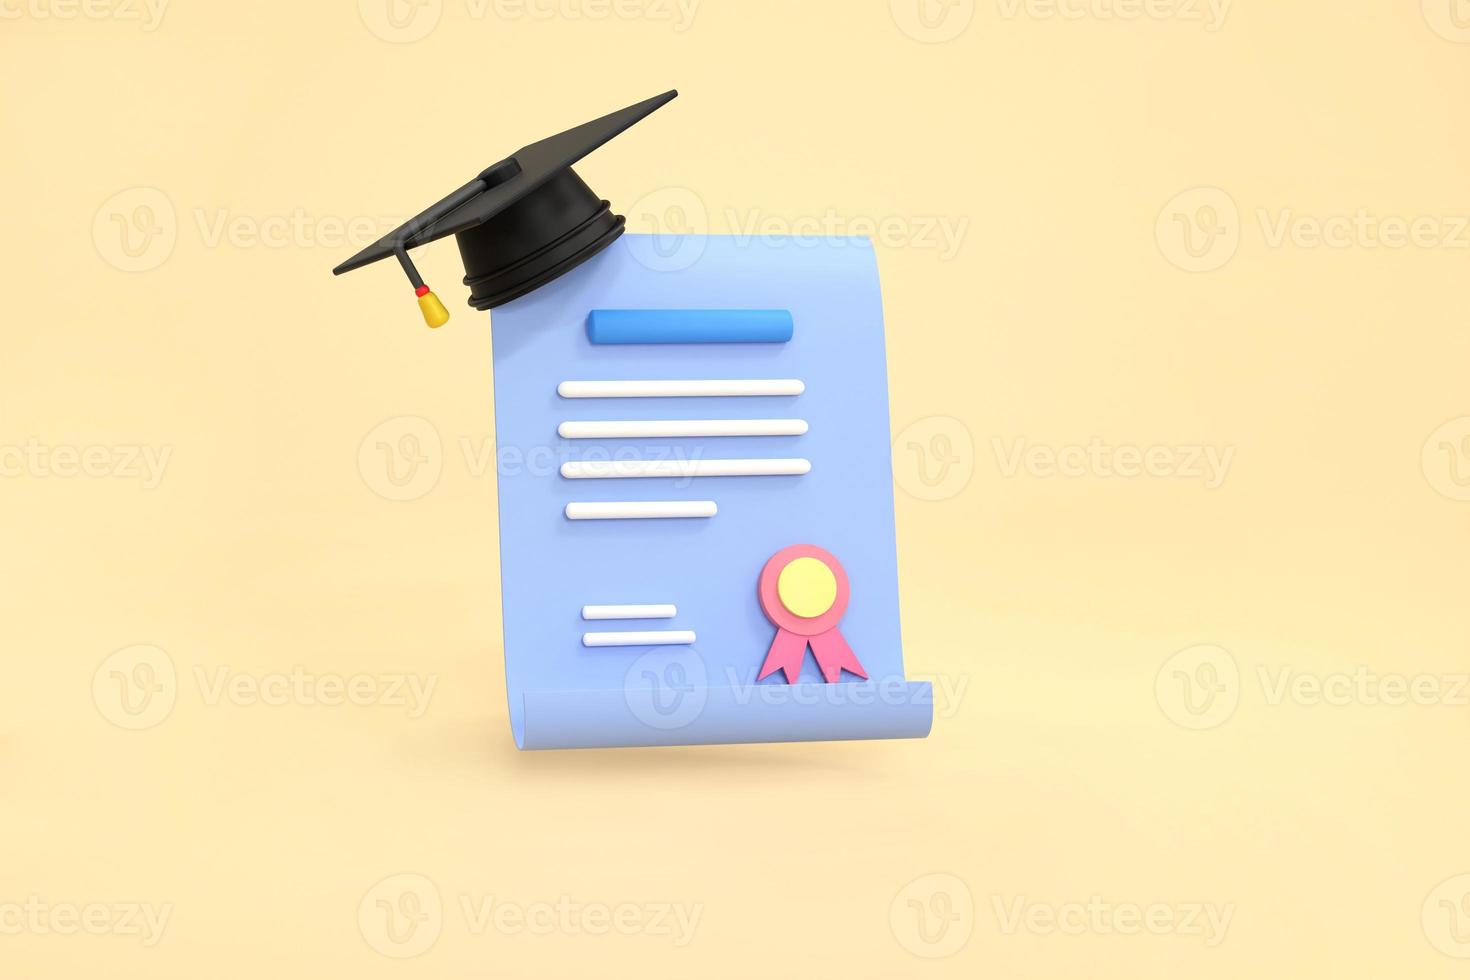 prestation, tilldela, bevilja, diplom begrepp. gradering certifikat med stämpel och band rosett. foto